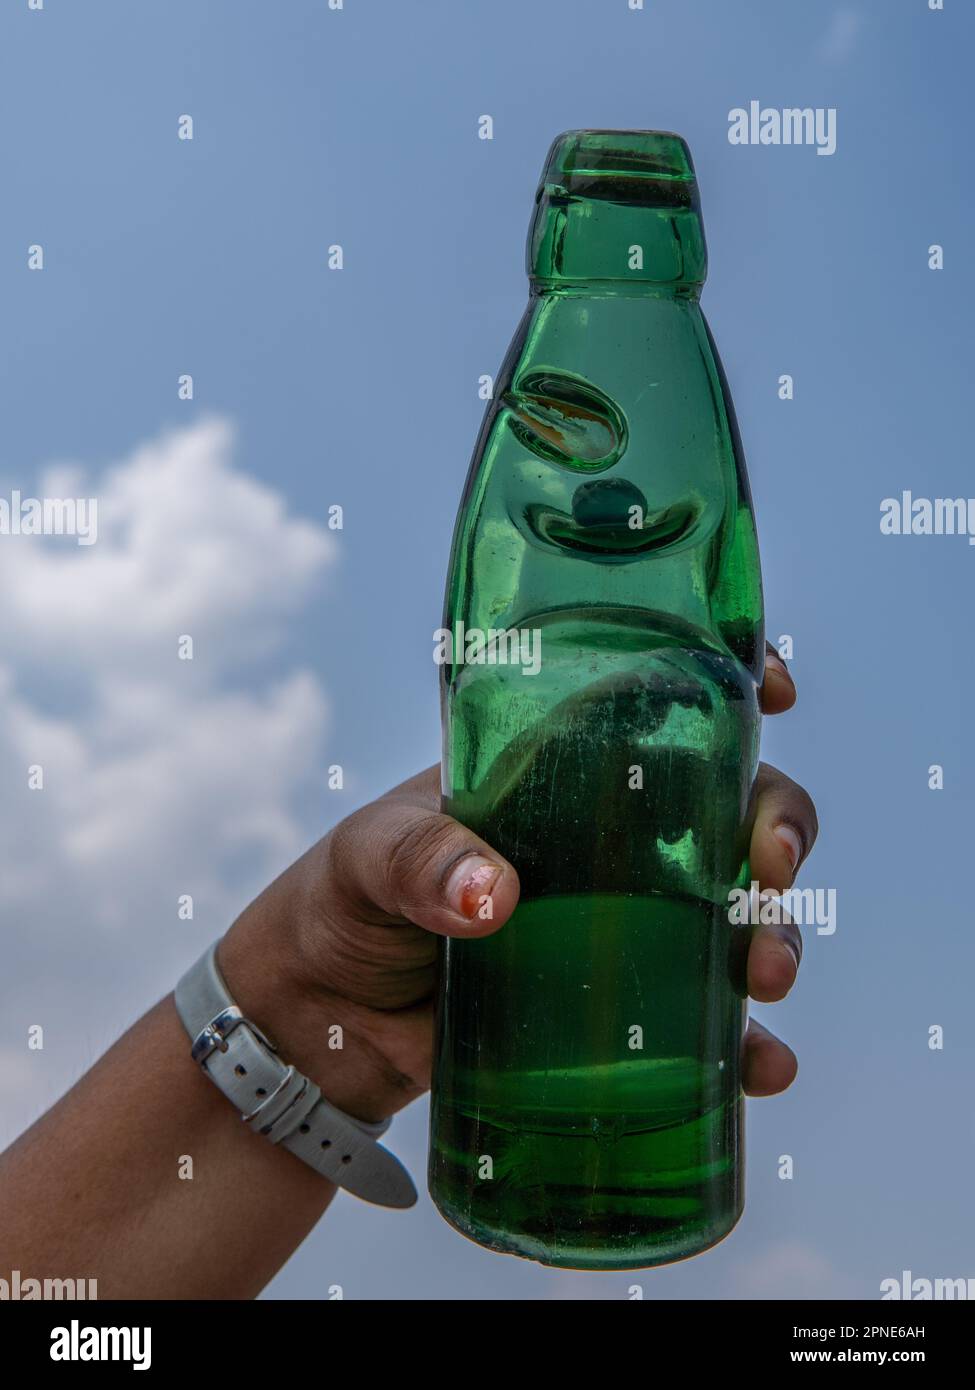 https://c8.alamy.com/compes/2pne6ah/una-mujer-joven-sosteniendo-una-botella-de-soda-de-goli-en-un-hermoso-dia-botella-de-soda-con-un-tapon-circular-de-marmol-bebida-tradicional-refrescante-2pne6ah.jpg